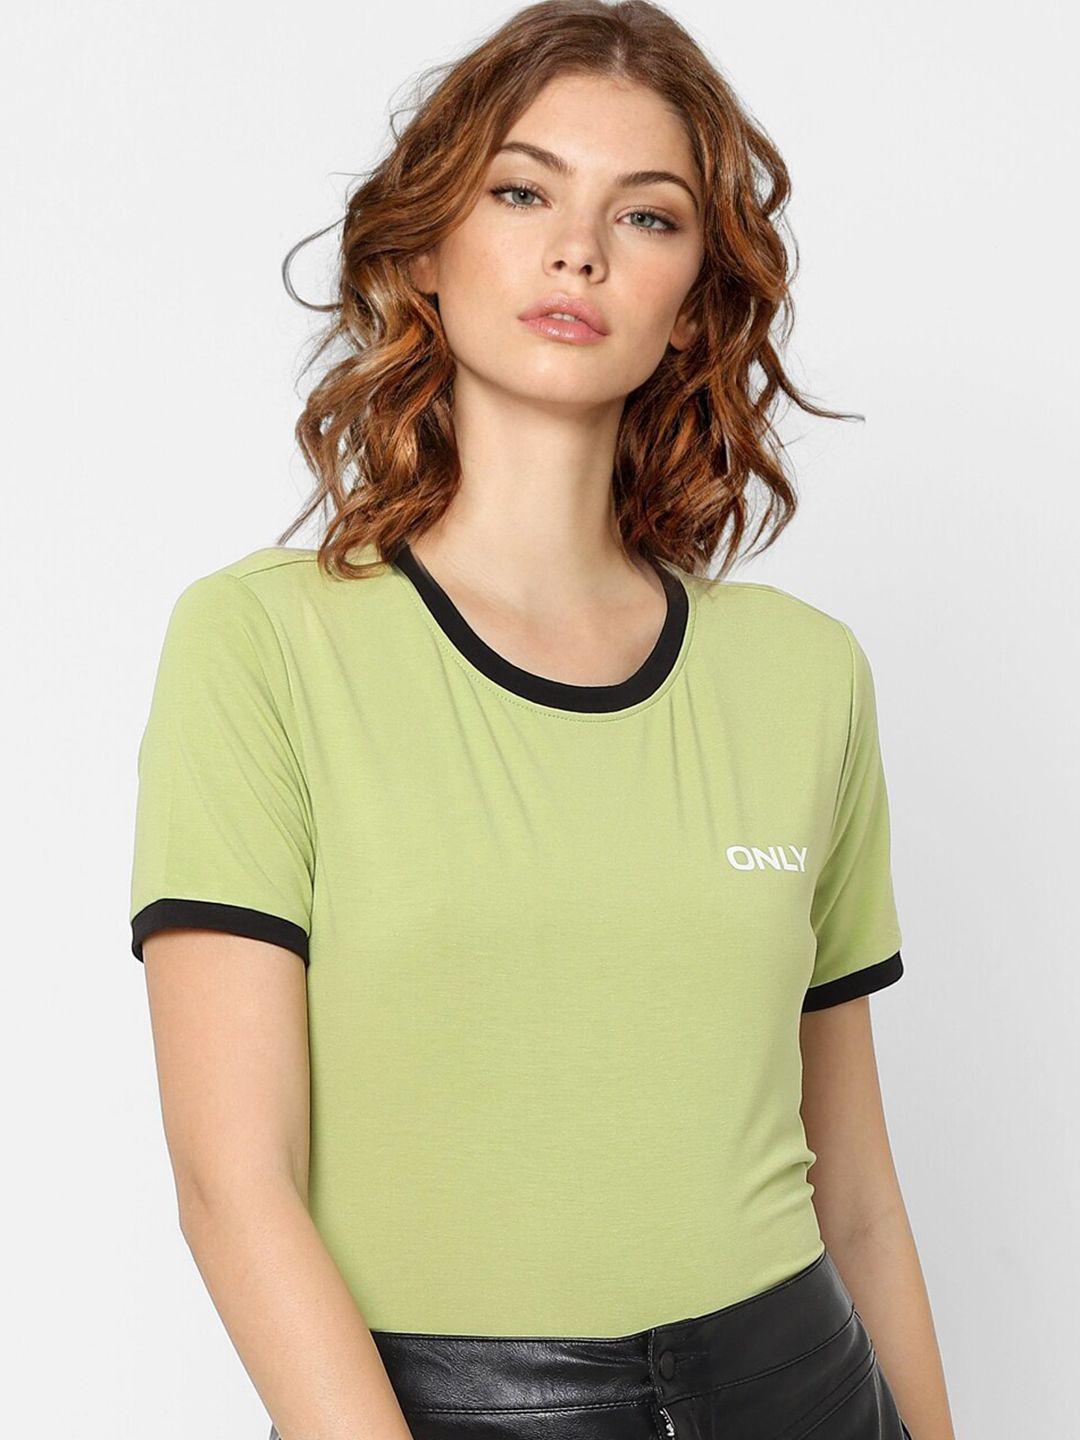 ONLY Women Green Pockets T-shirt